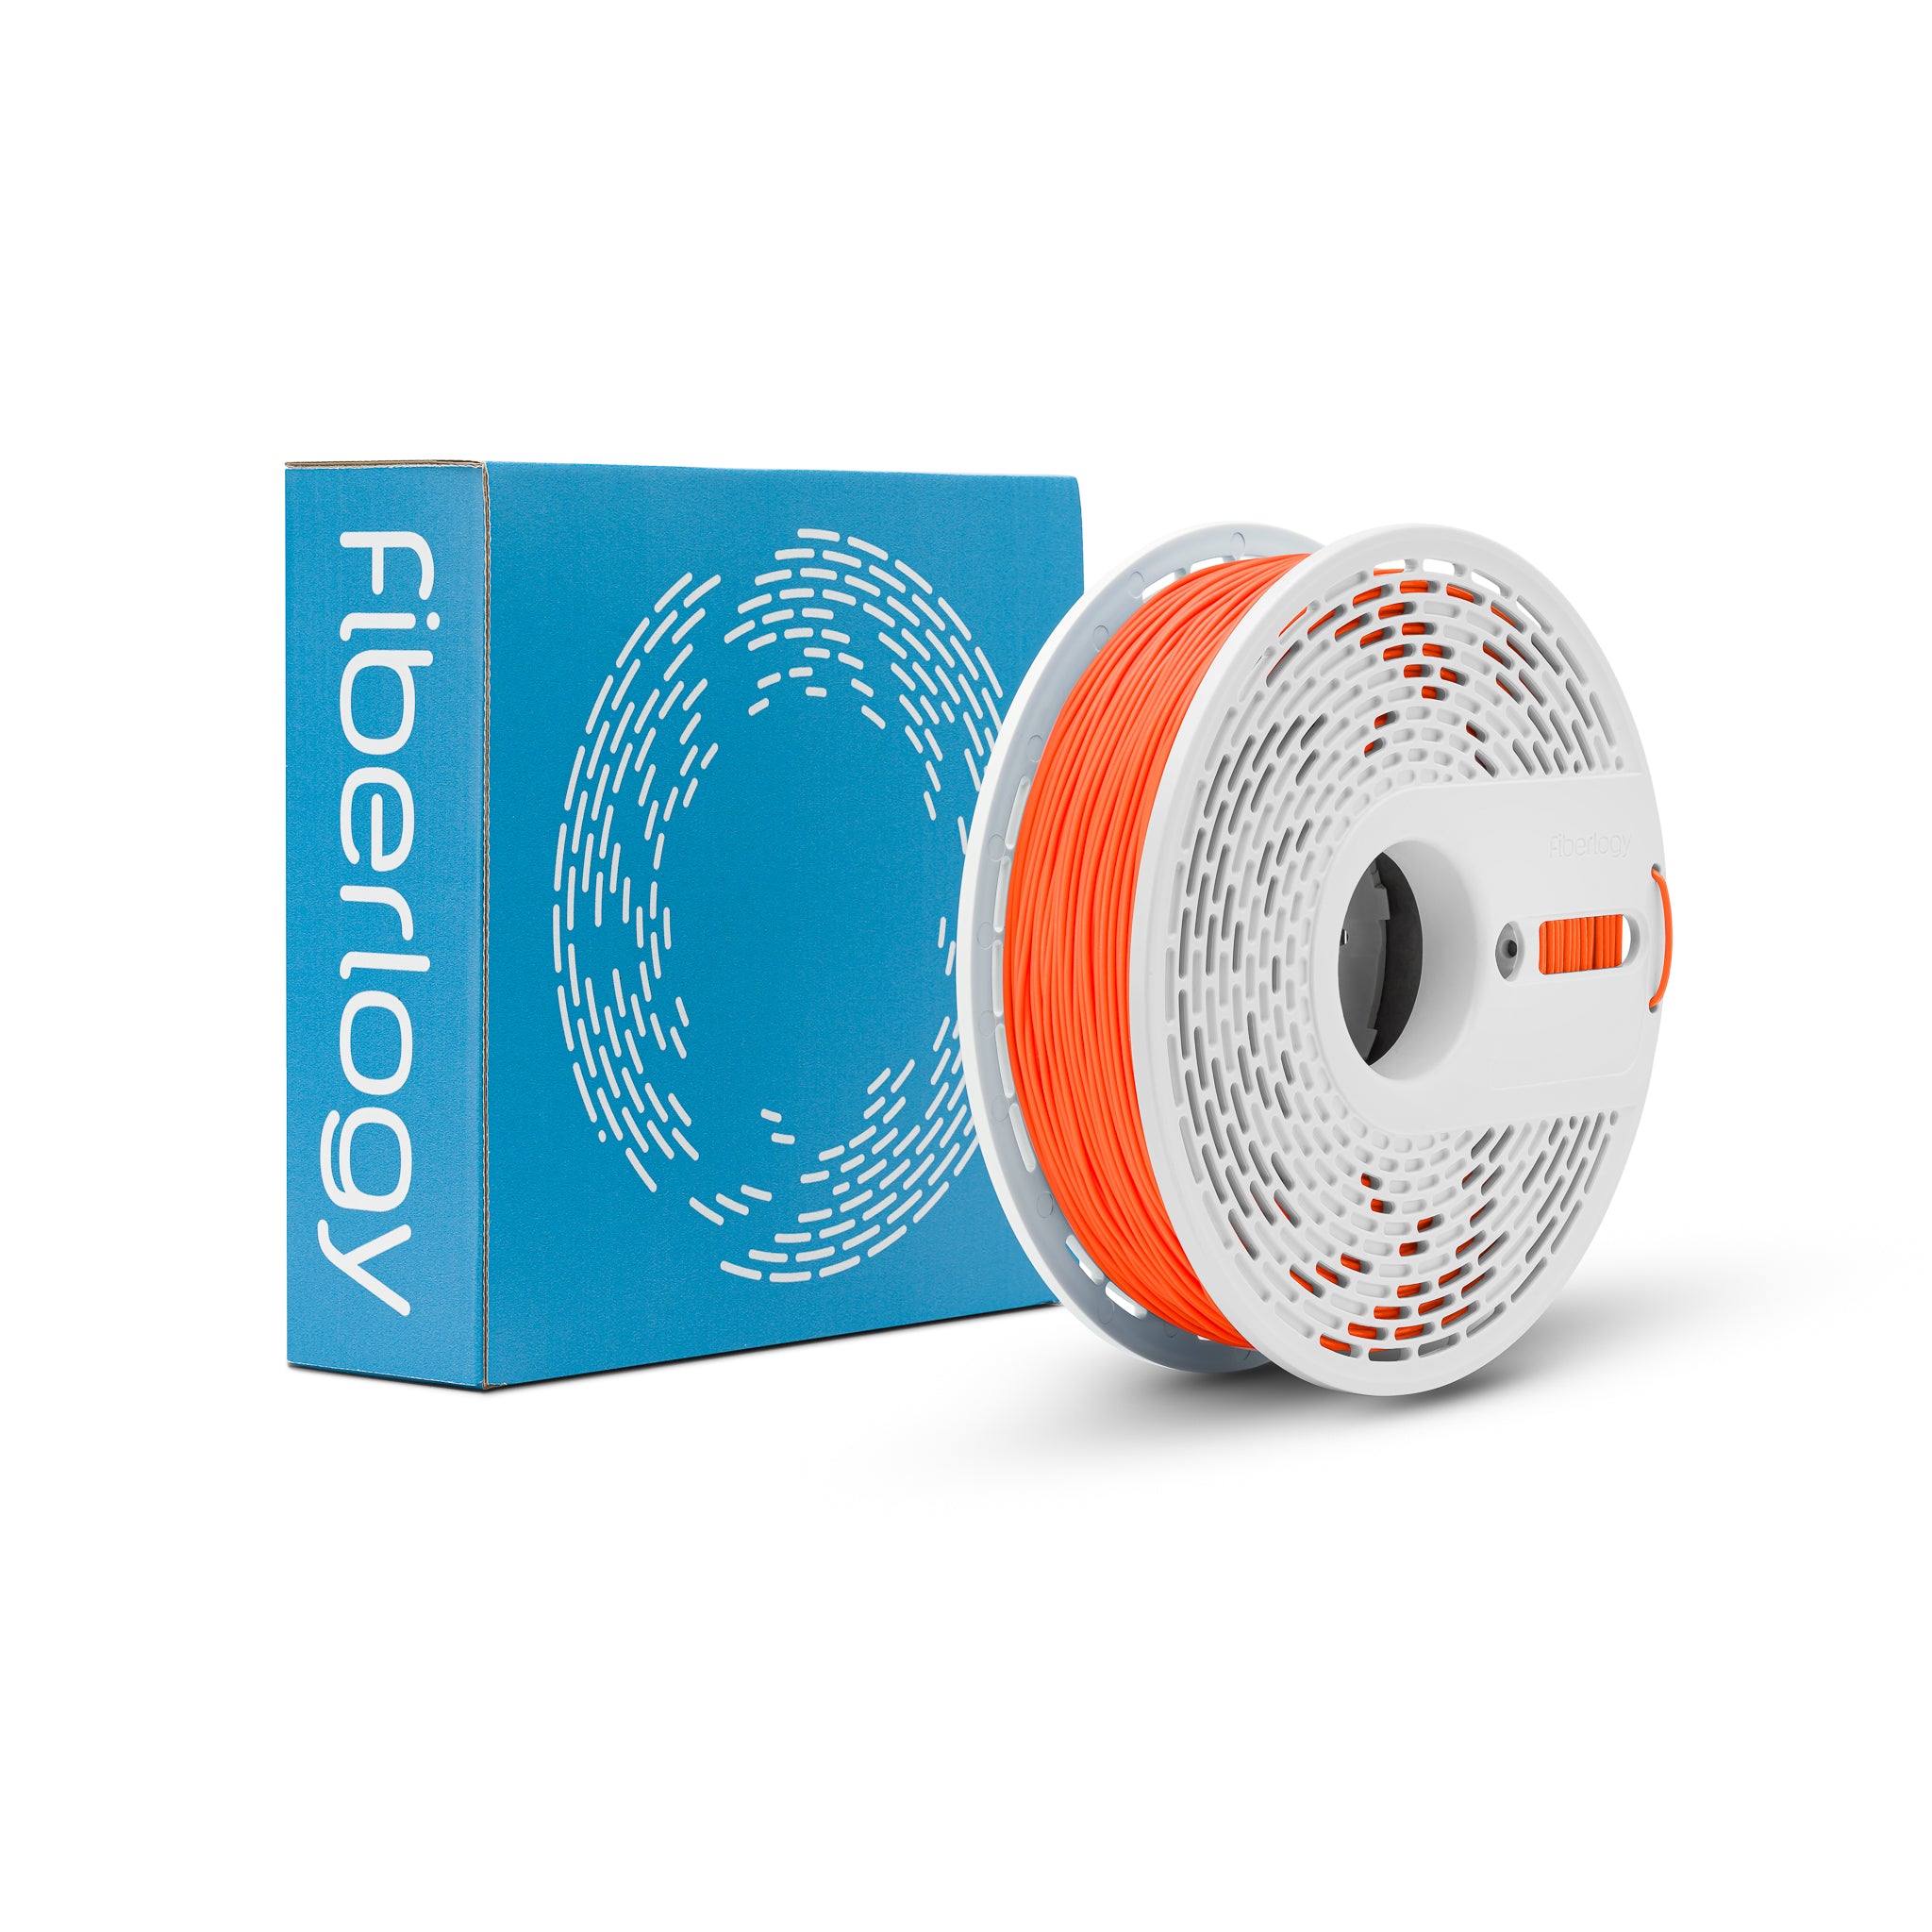 Fiberlogy FIBERFLEX 30D -  Orange [1.75mm] (59,80€/Kg)